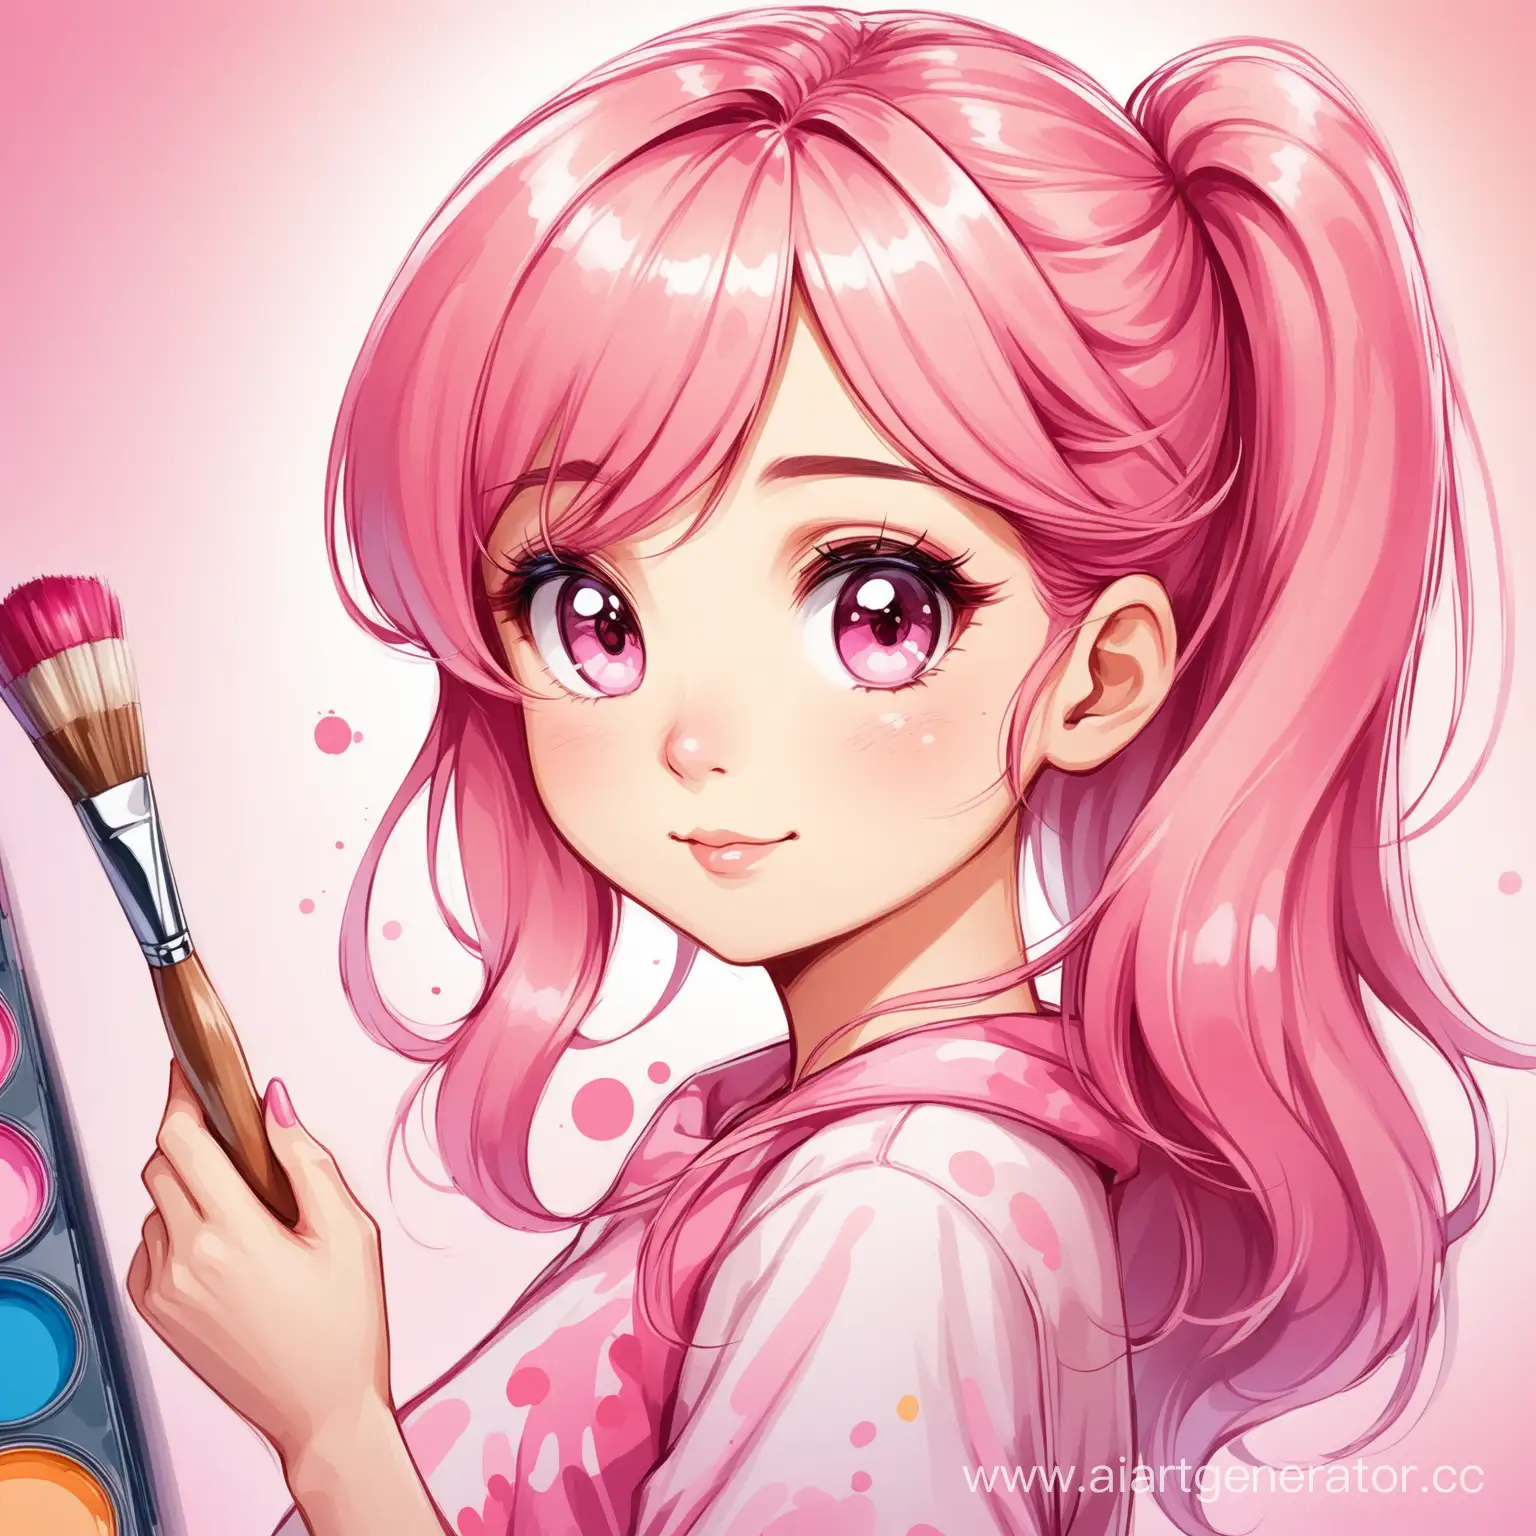 Сгенерируй изображение мультяшной девочки-дизайнера с красками и кисточкой в розовых тонах